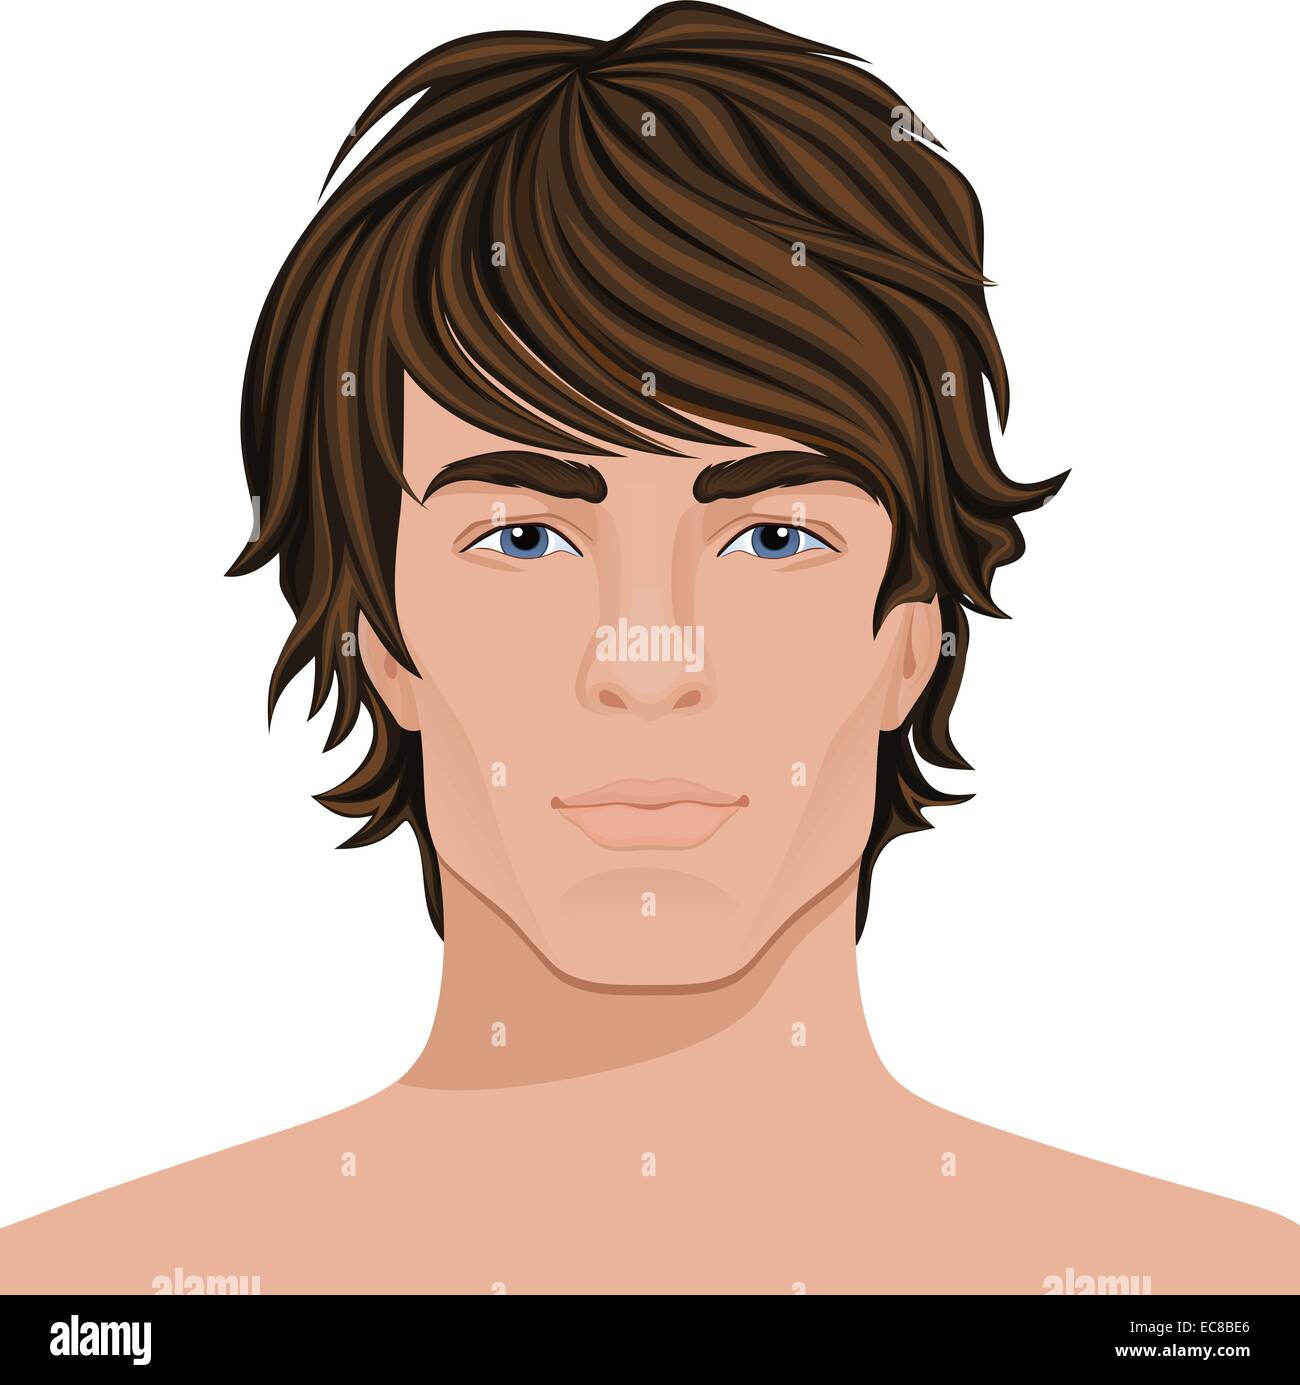 Hübscher junger Mann mit braunen Haaren Gesicht-Porträt-Vektor-illustration  Stock-Vektorgrafik - Alamy